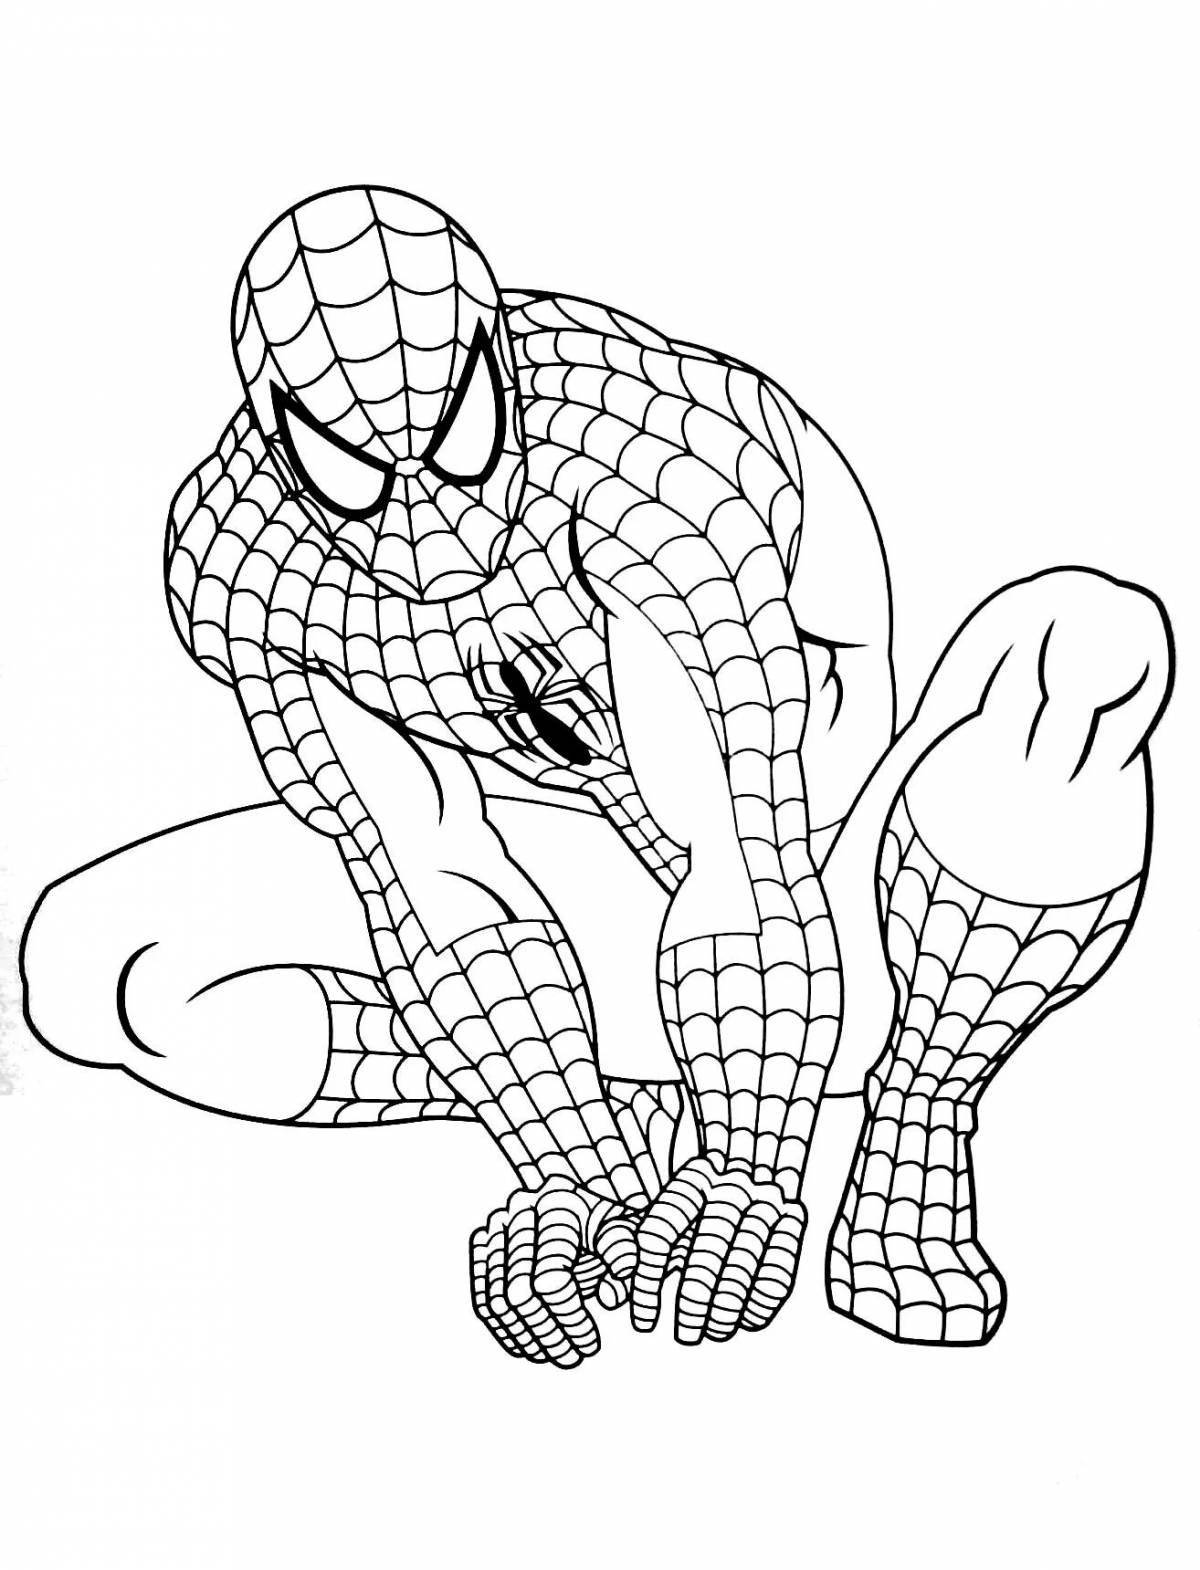 Увлекательный рисунок человека-паука